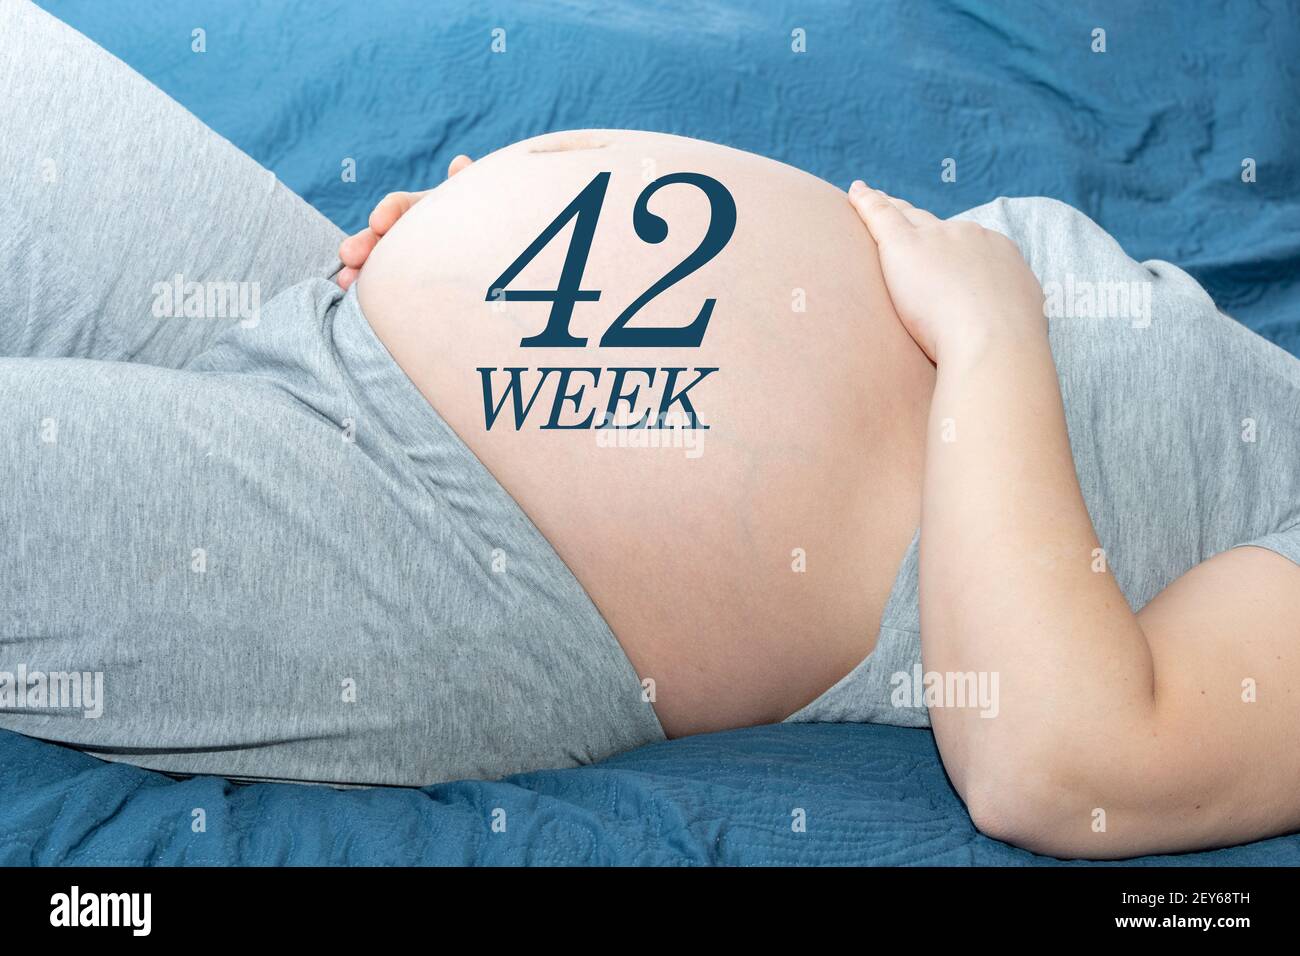 Il concetto di gravidanza. Bella pancia di una donna incinta con un calendario di 42 settimane. Una donna incinta si aspetta un bambino. Concetto di tempo e attesa Foto Stock